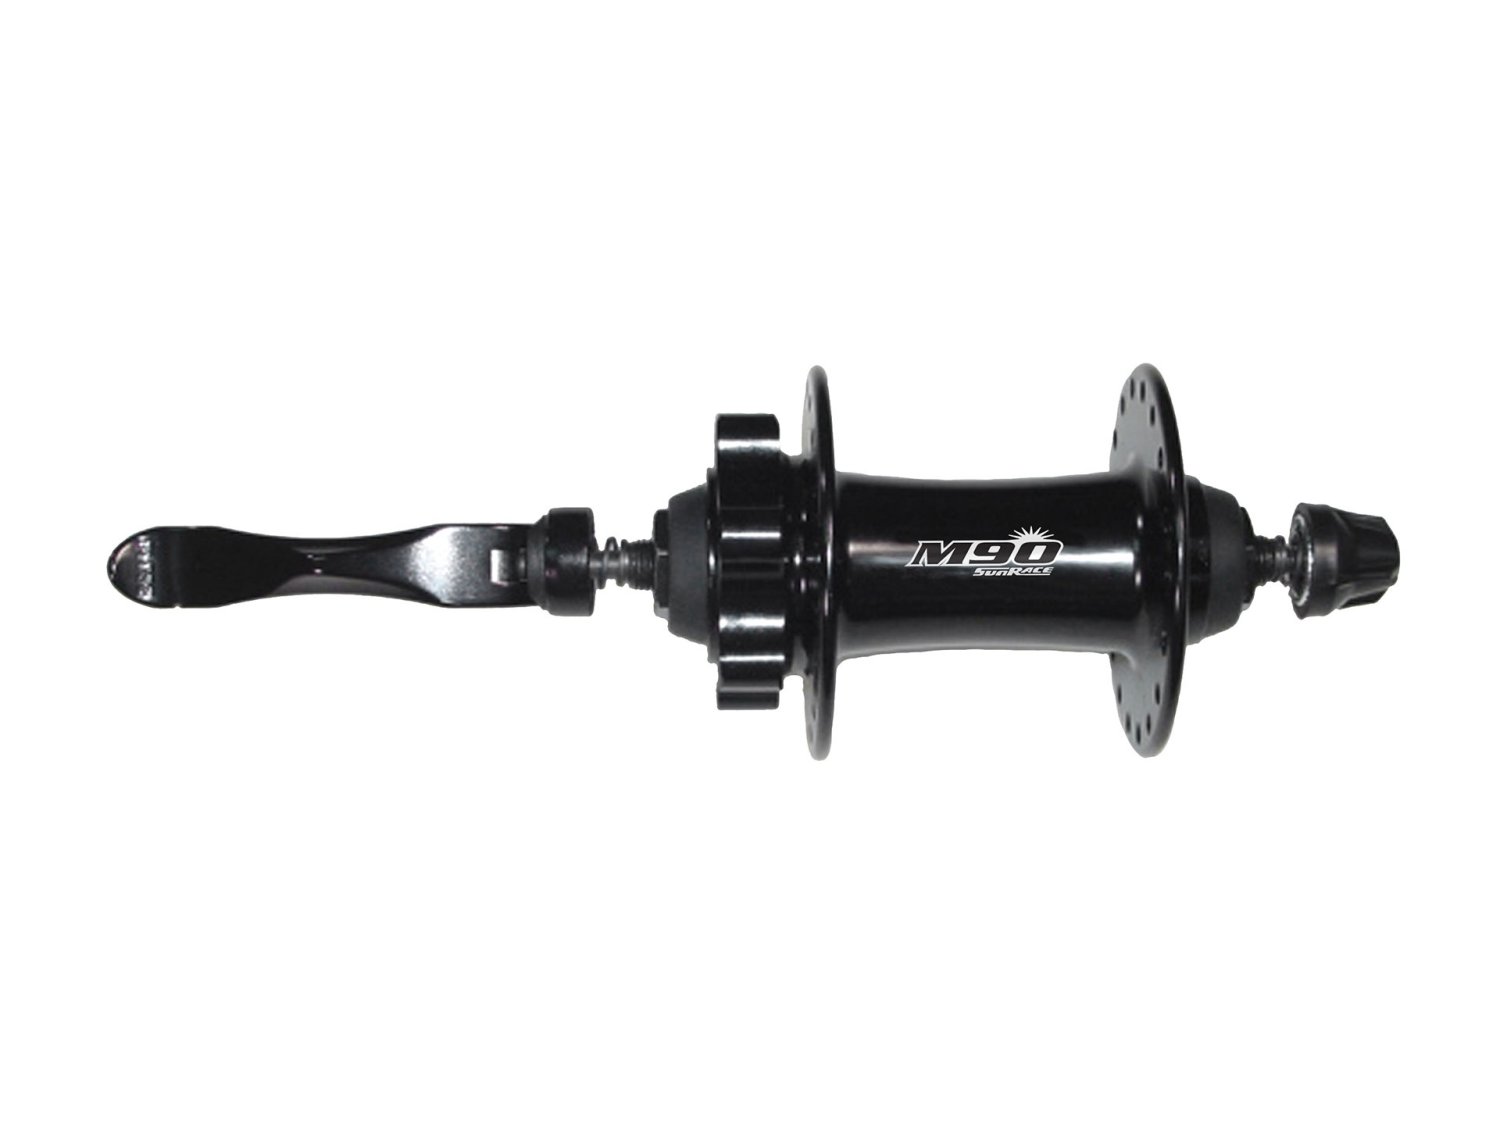 Втулка велосипедная SUNRACE HBM96.F0QS.DS1.BX M96, передняя, с эксцентриком, 32H, под диск, чёрный, 06-201509 втулка велосипедная sunrace hbm63 f0qs ds0 bx m63 передняя с эксцентриком 32h чёрный 06 201506